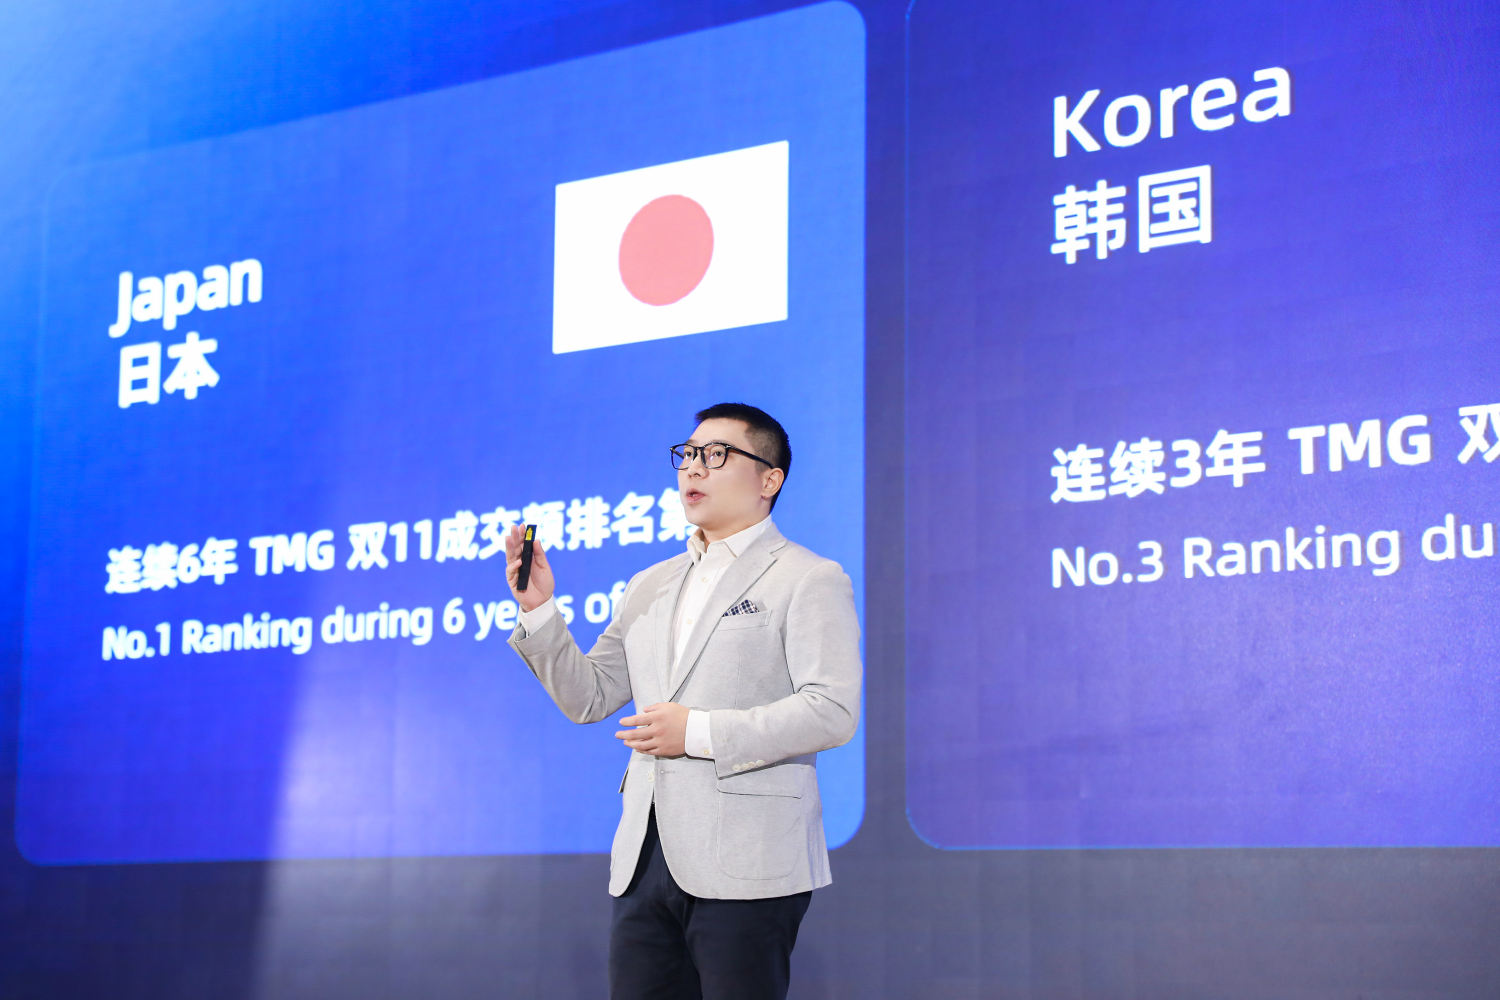 アリババが海外ブランド向けに越境ECに関するオンラインサミットを開催、ニューノーマルにおける中国消費者の日本製品購入を巡る最新トレンドを共有